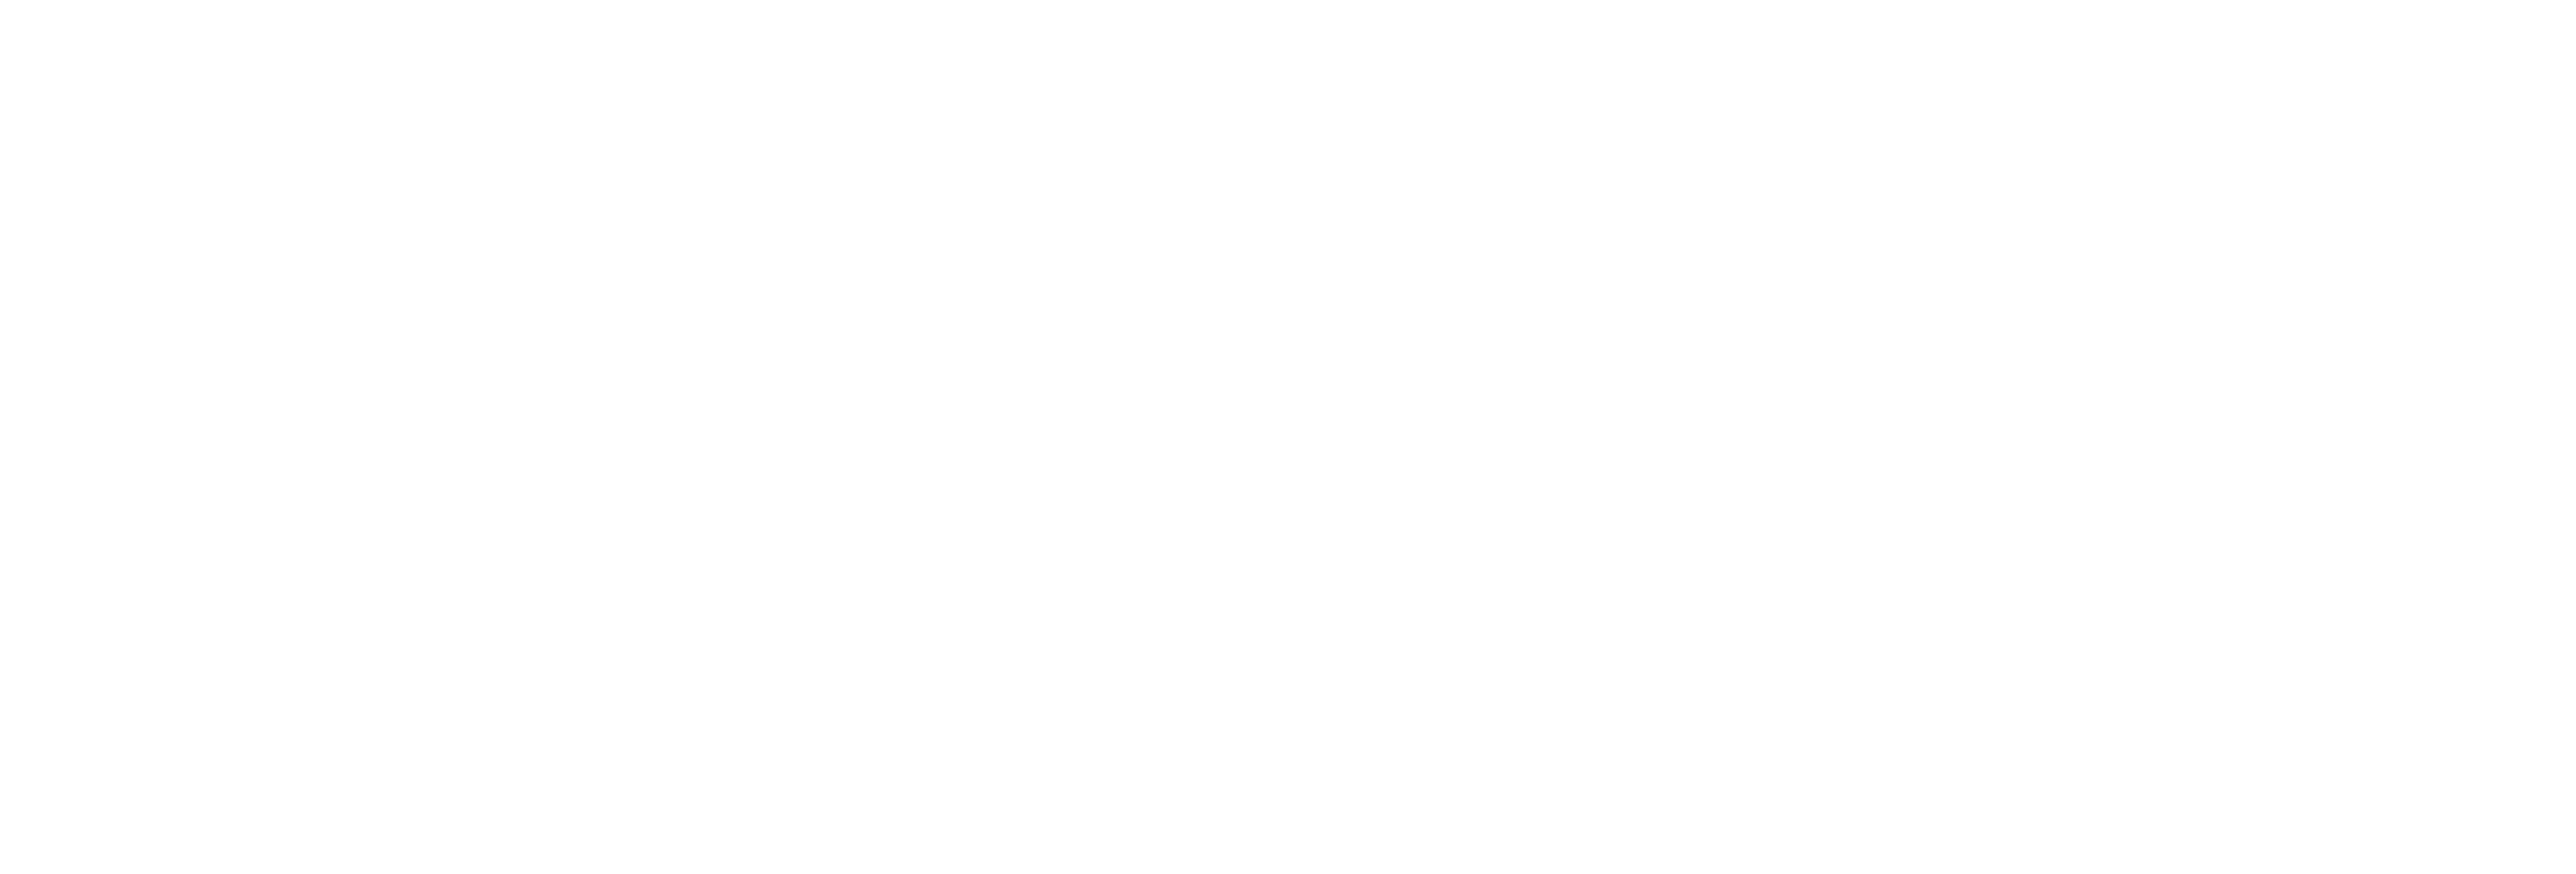 www.reefdelight.com